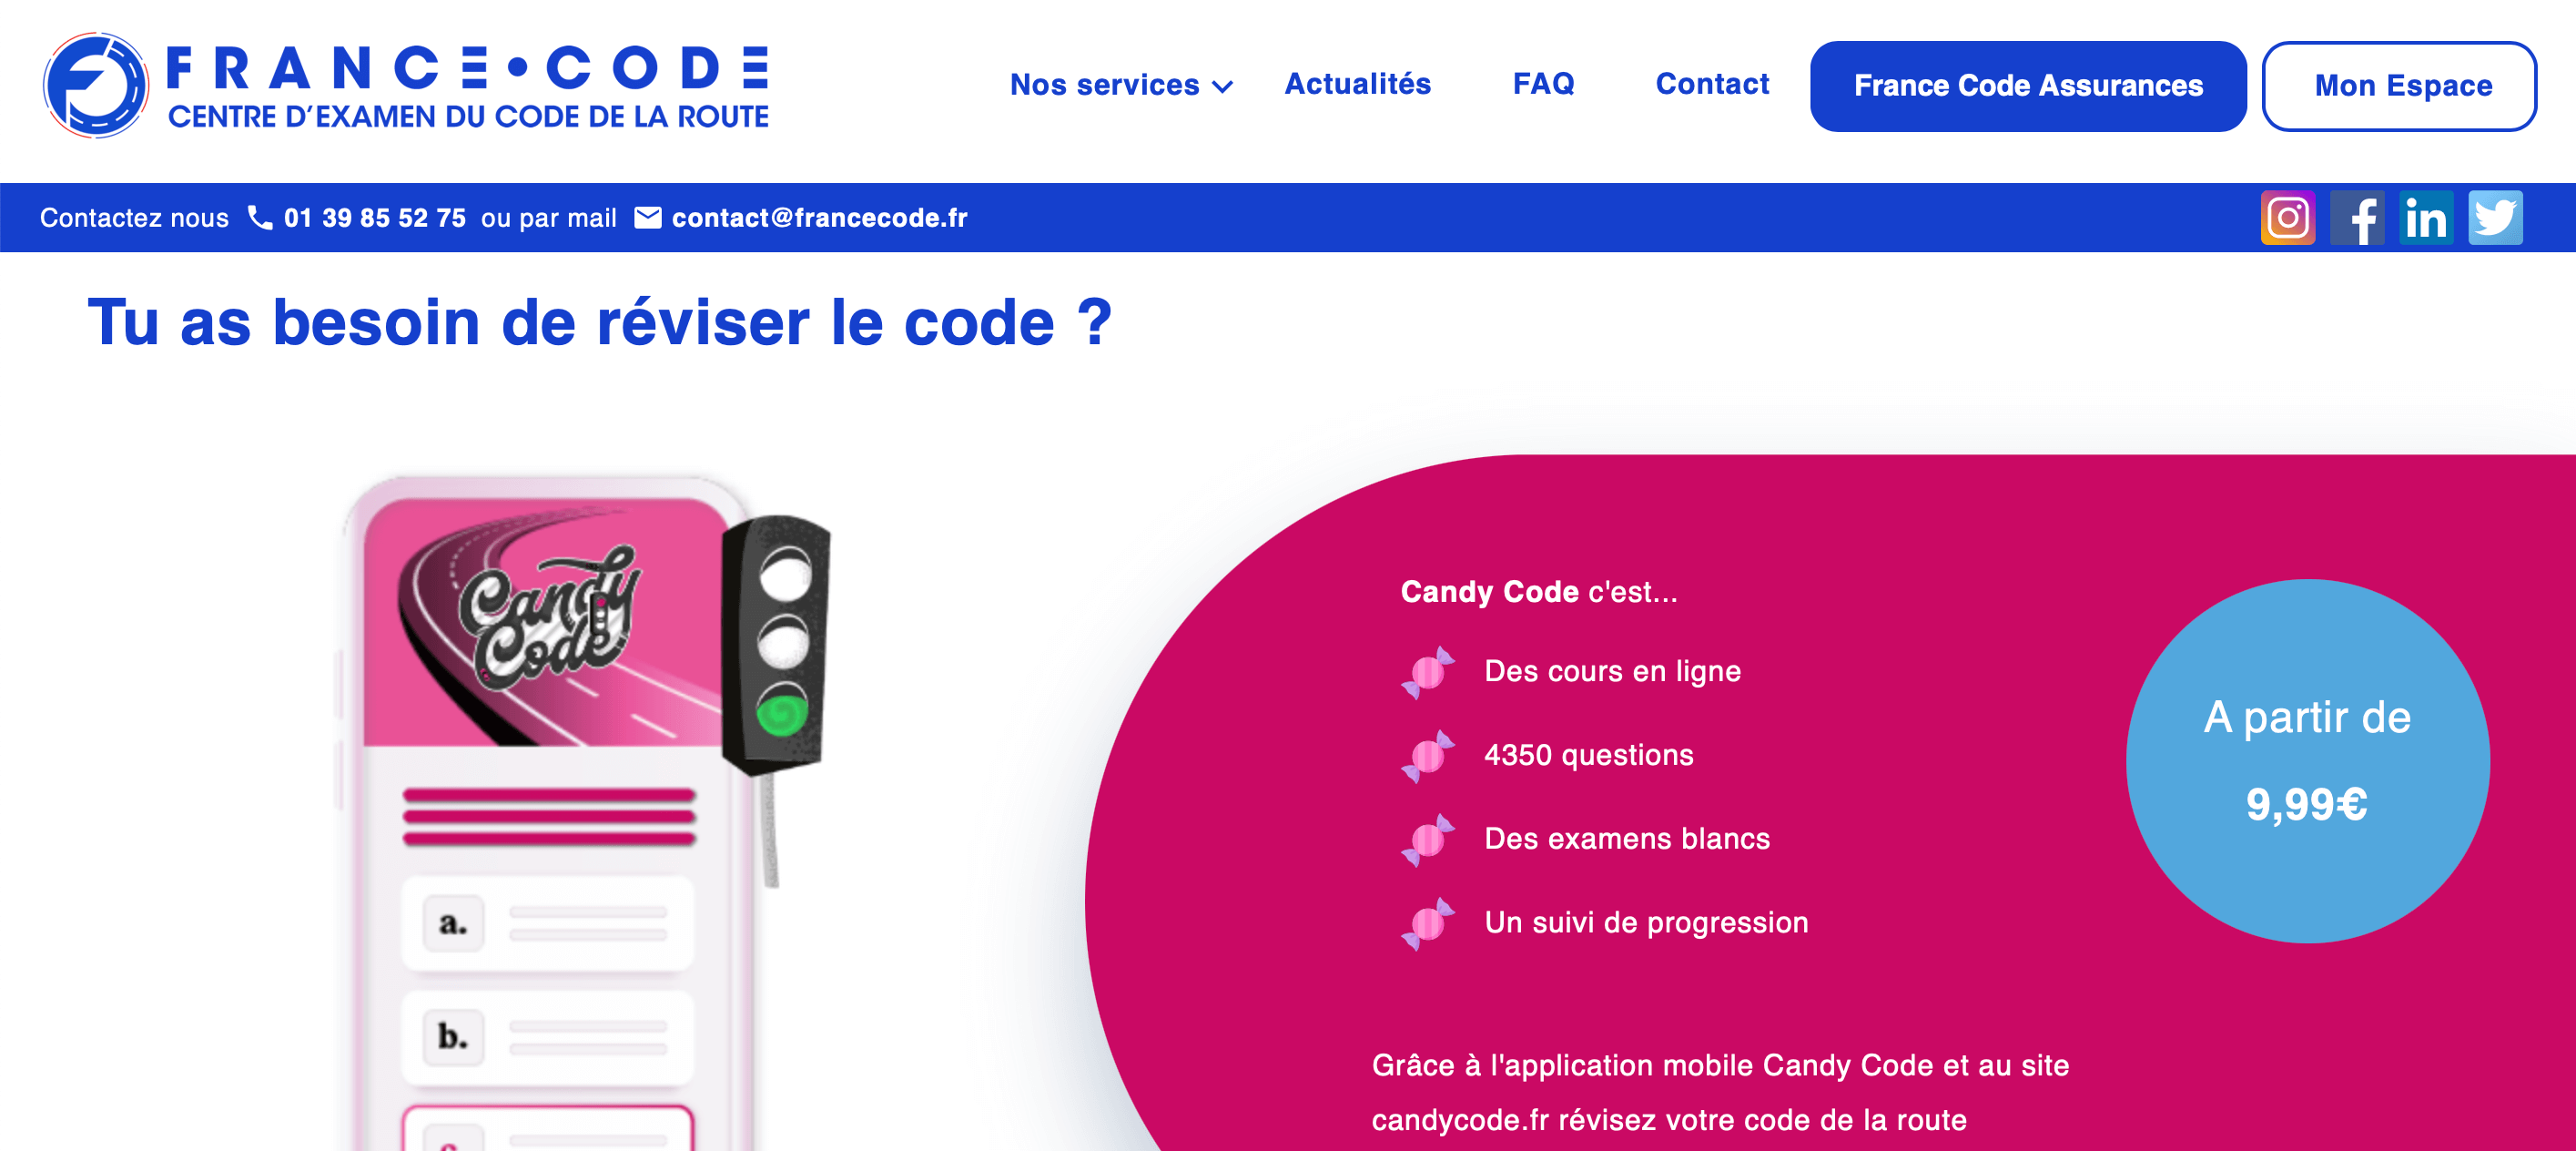 France Code - réviser code en ligne